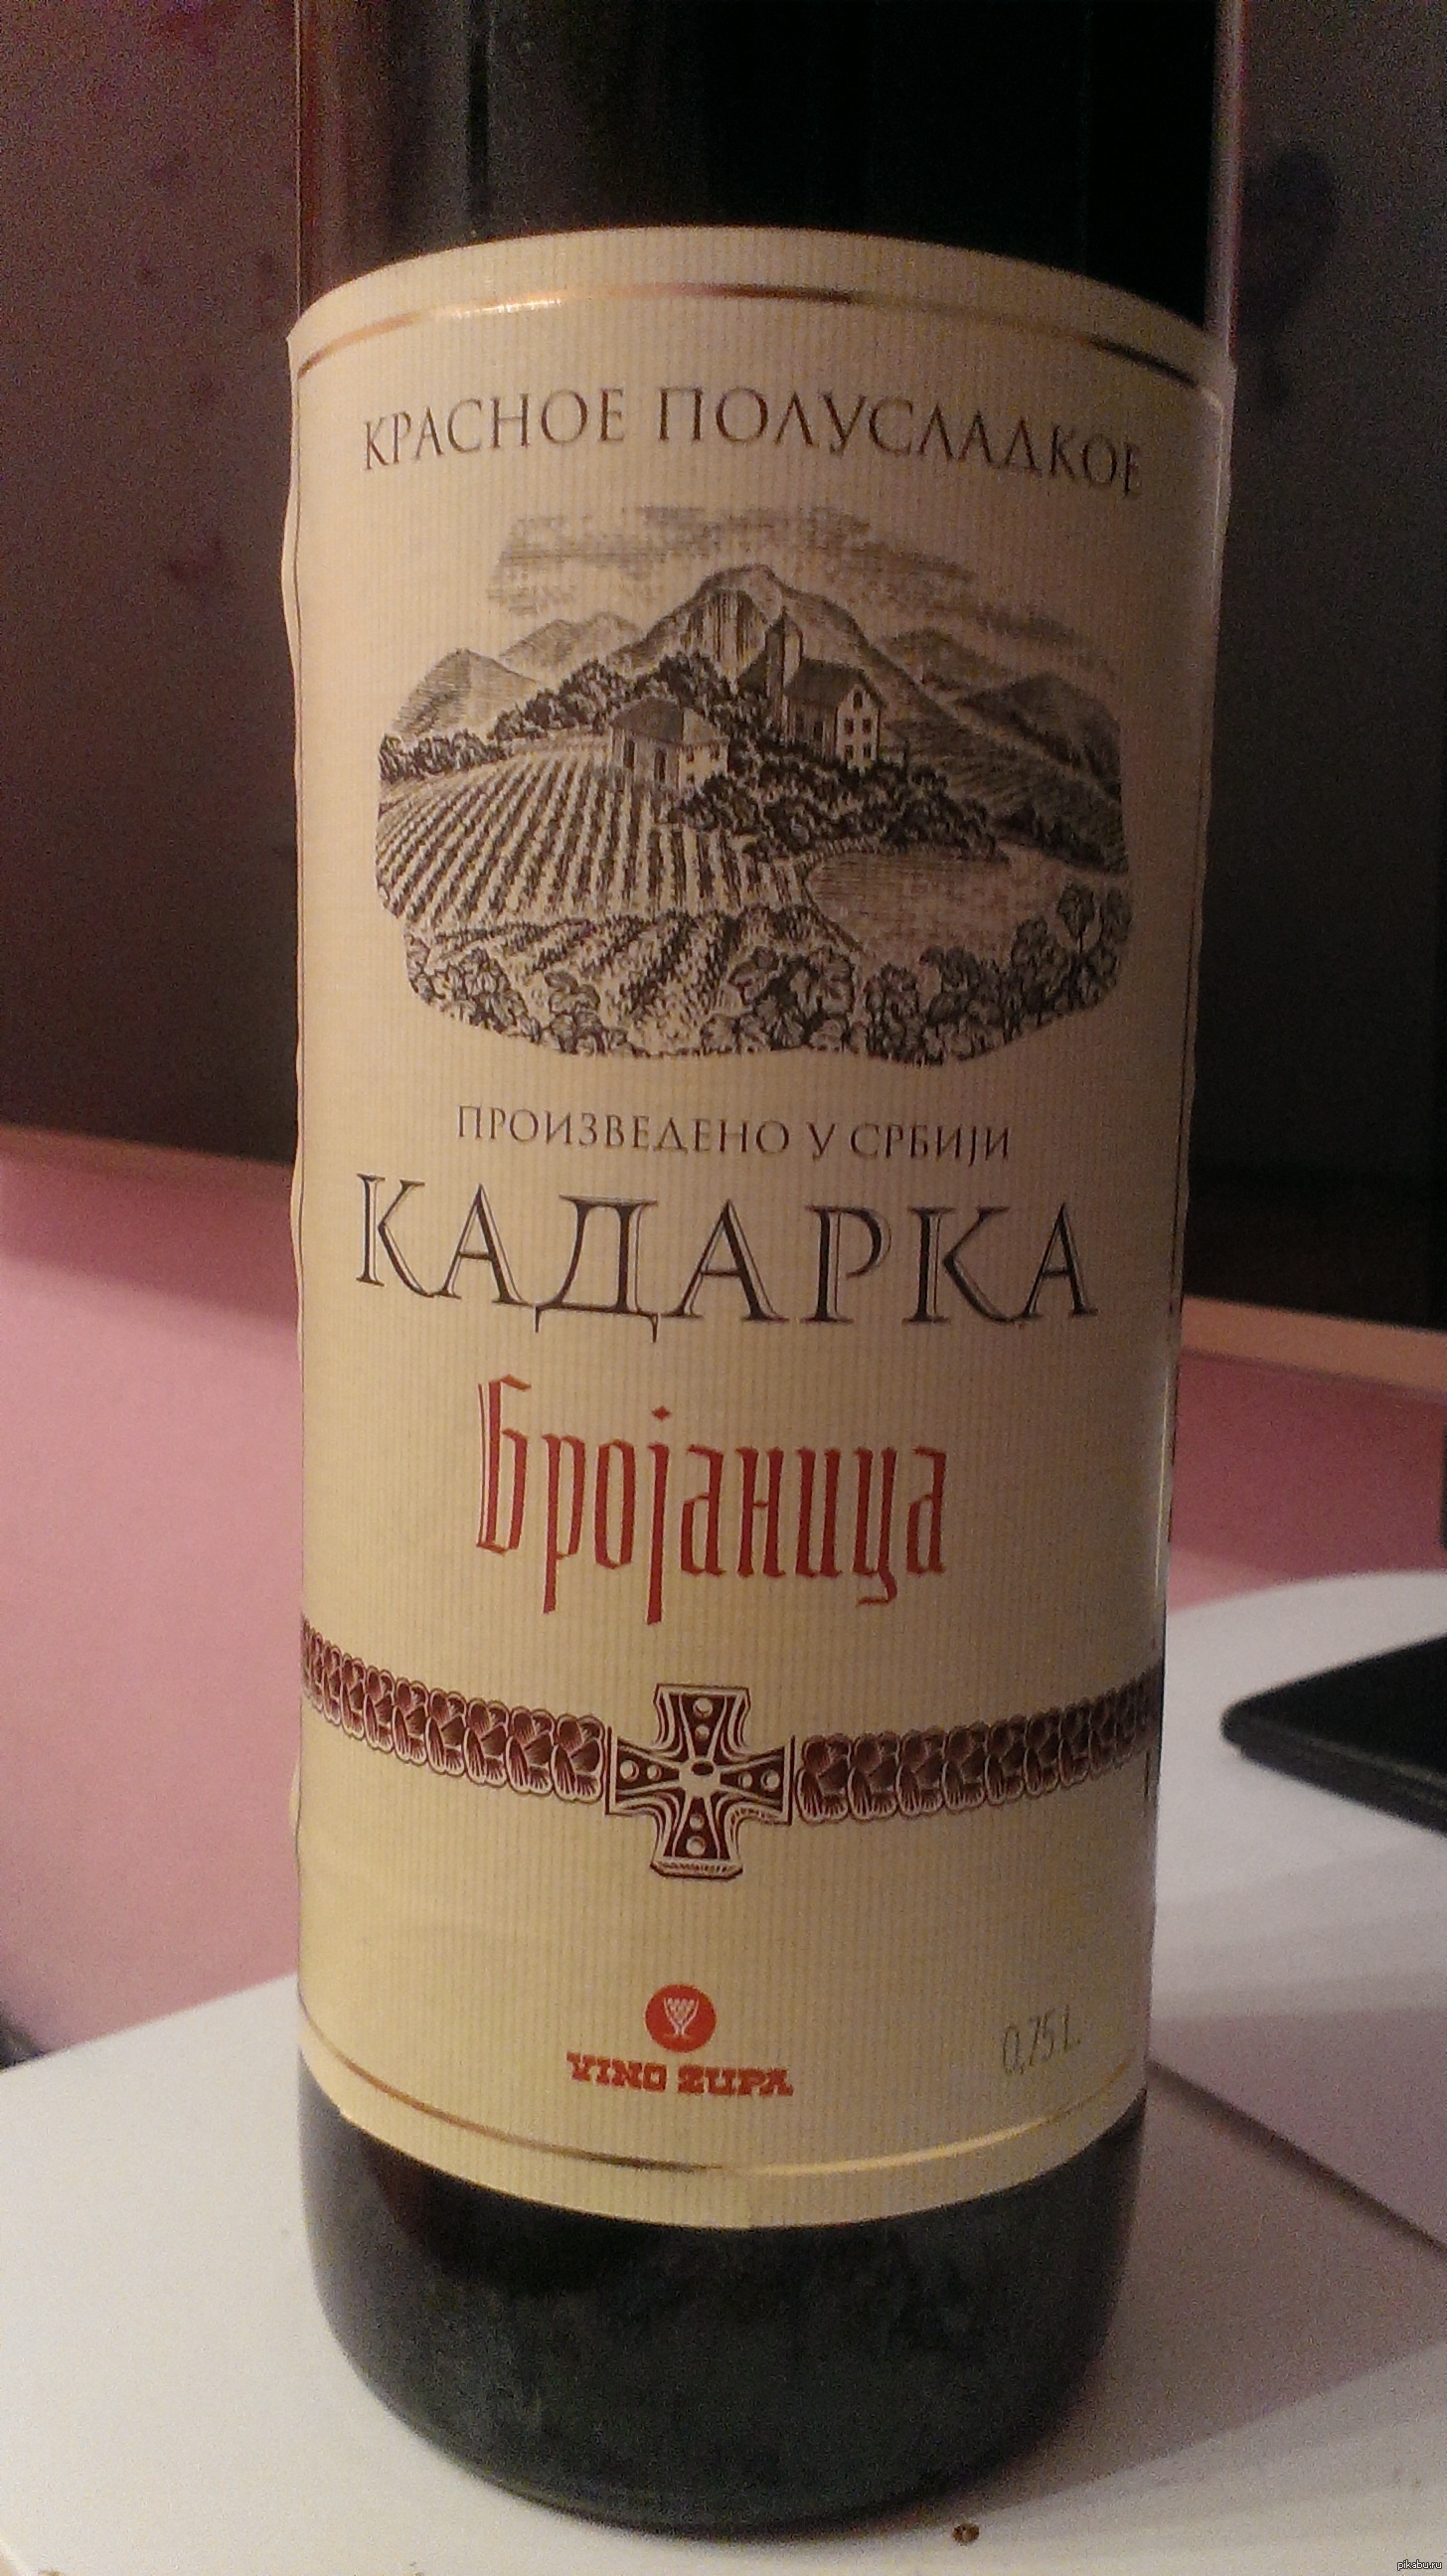 вино вранац сербия